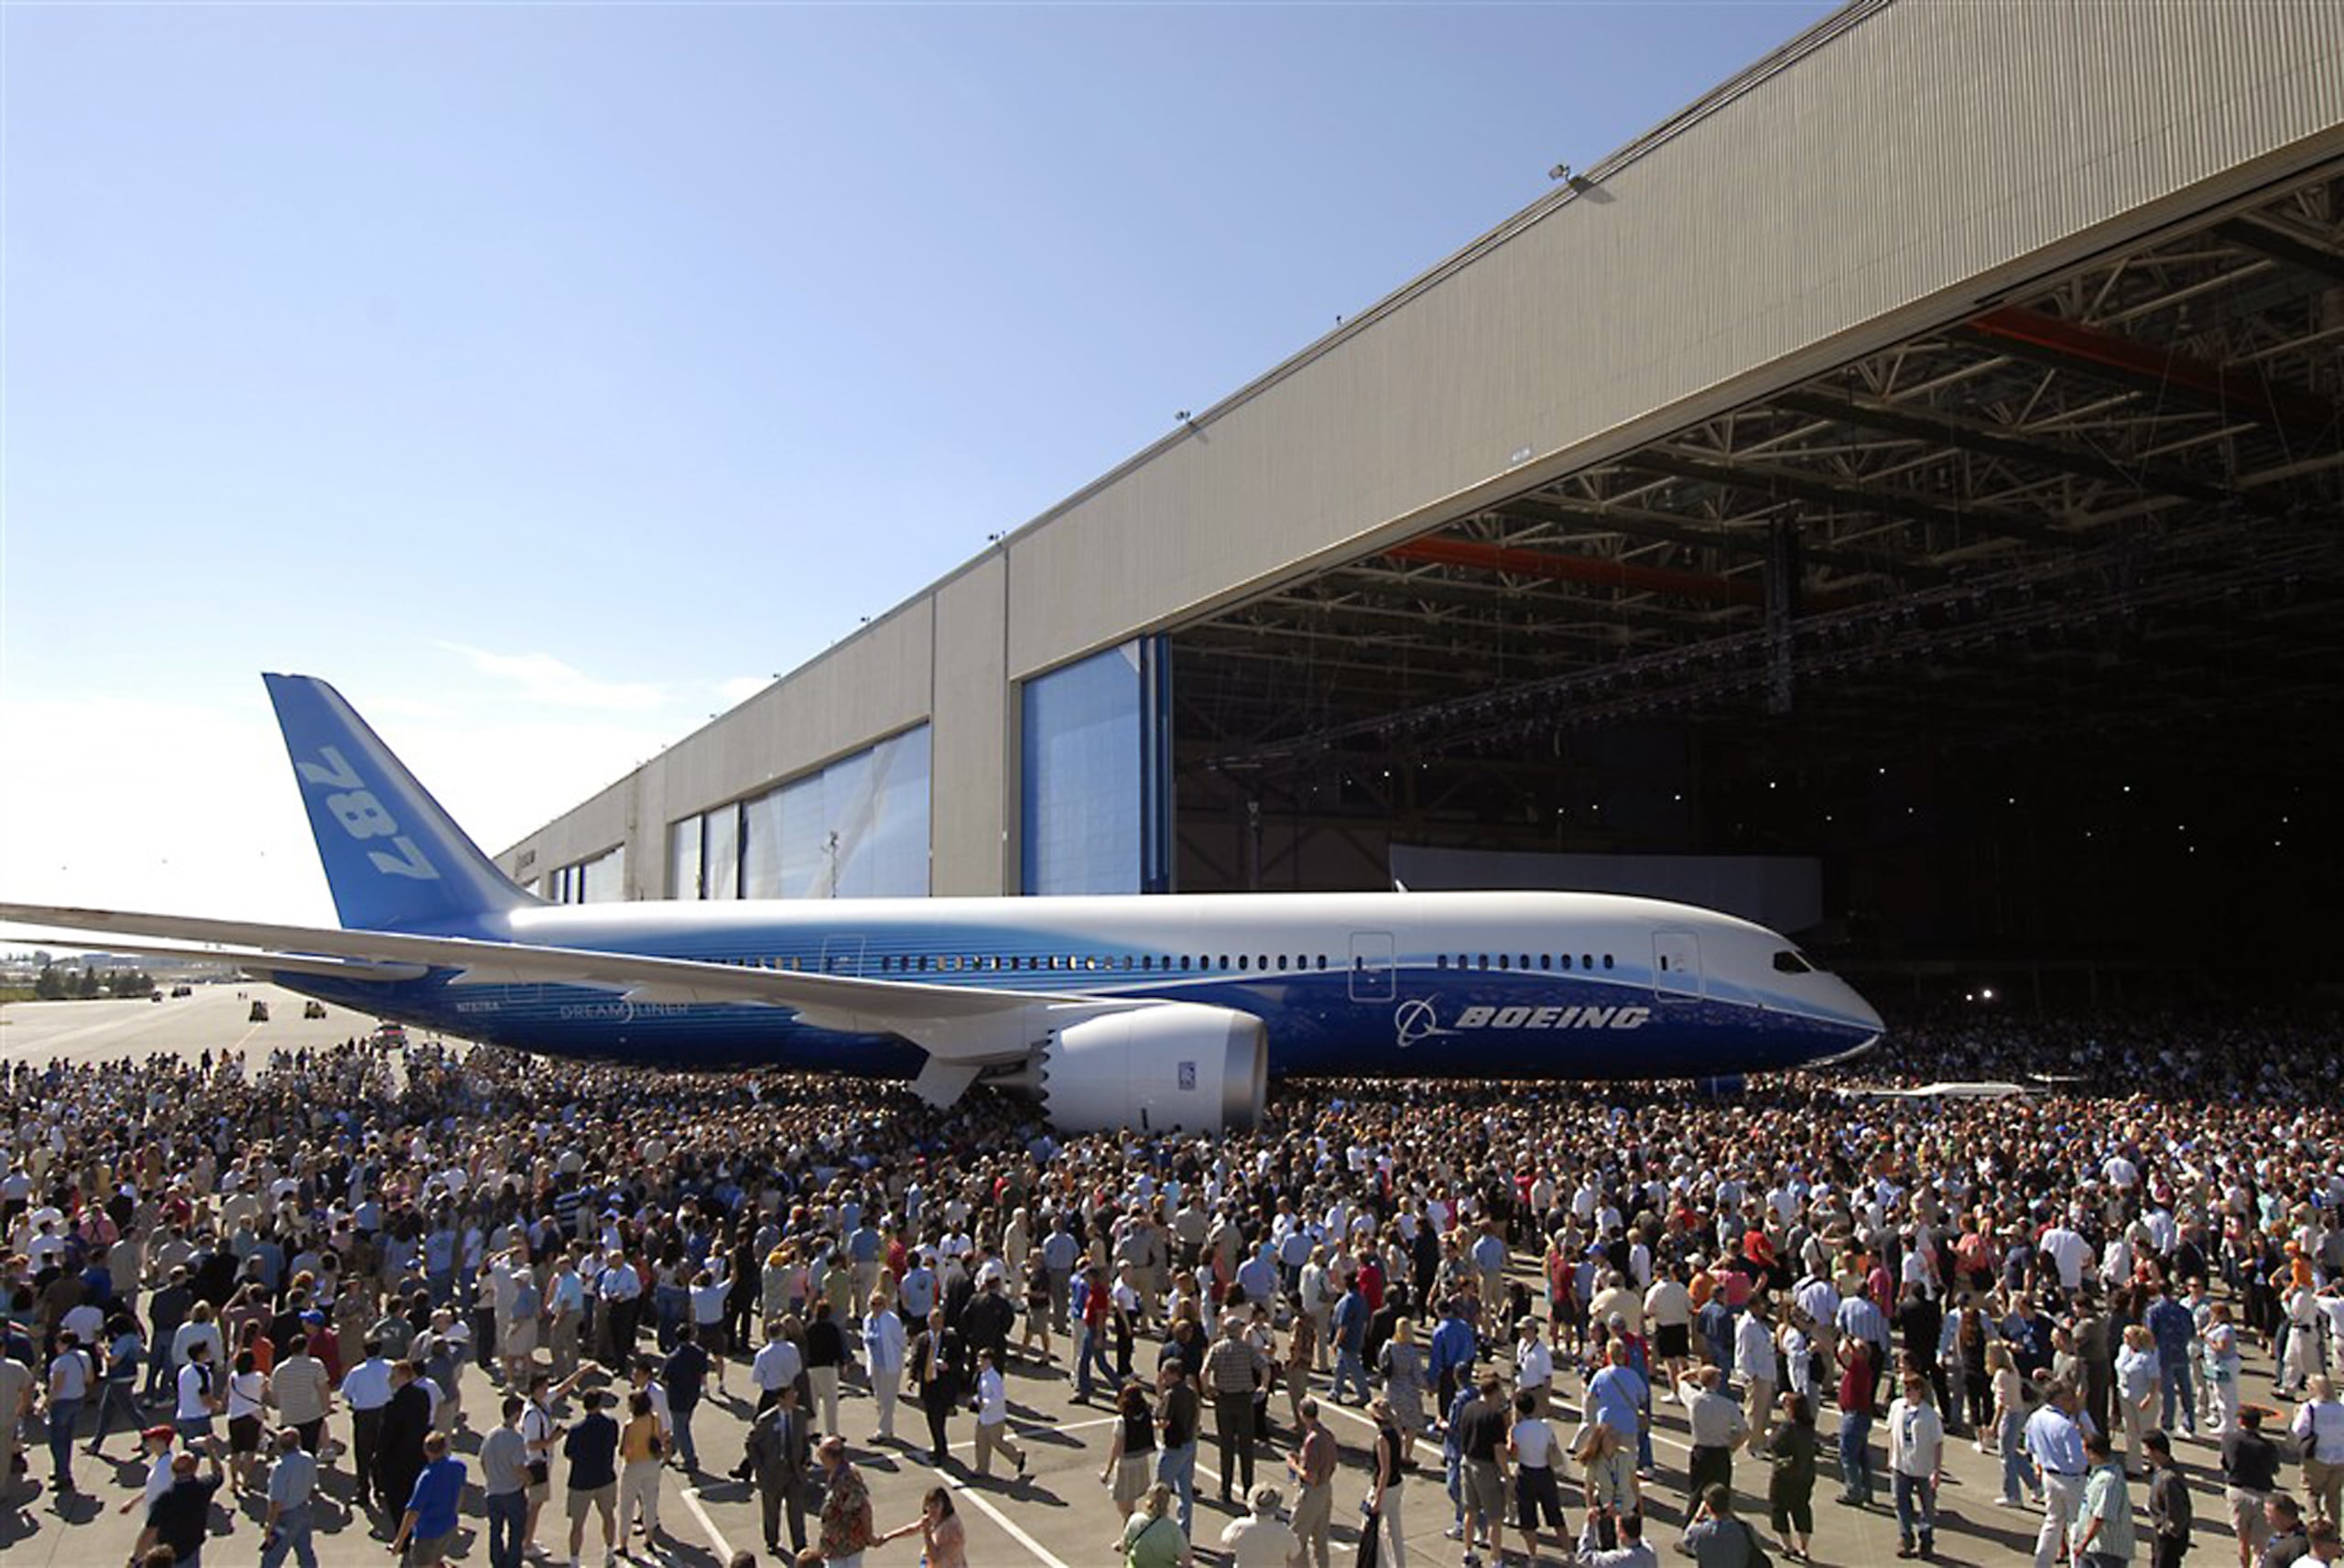 Las autoridades federales abrieron una investigación contra Boeing después de que un exempleado denunciase que el fuselaje del 787 Dreamliner podría partirse en pleno vuelo.